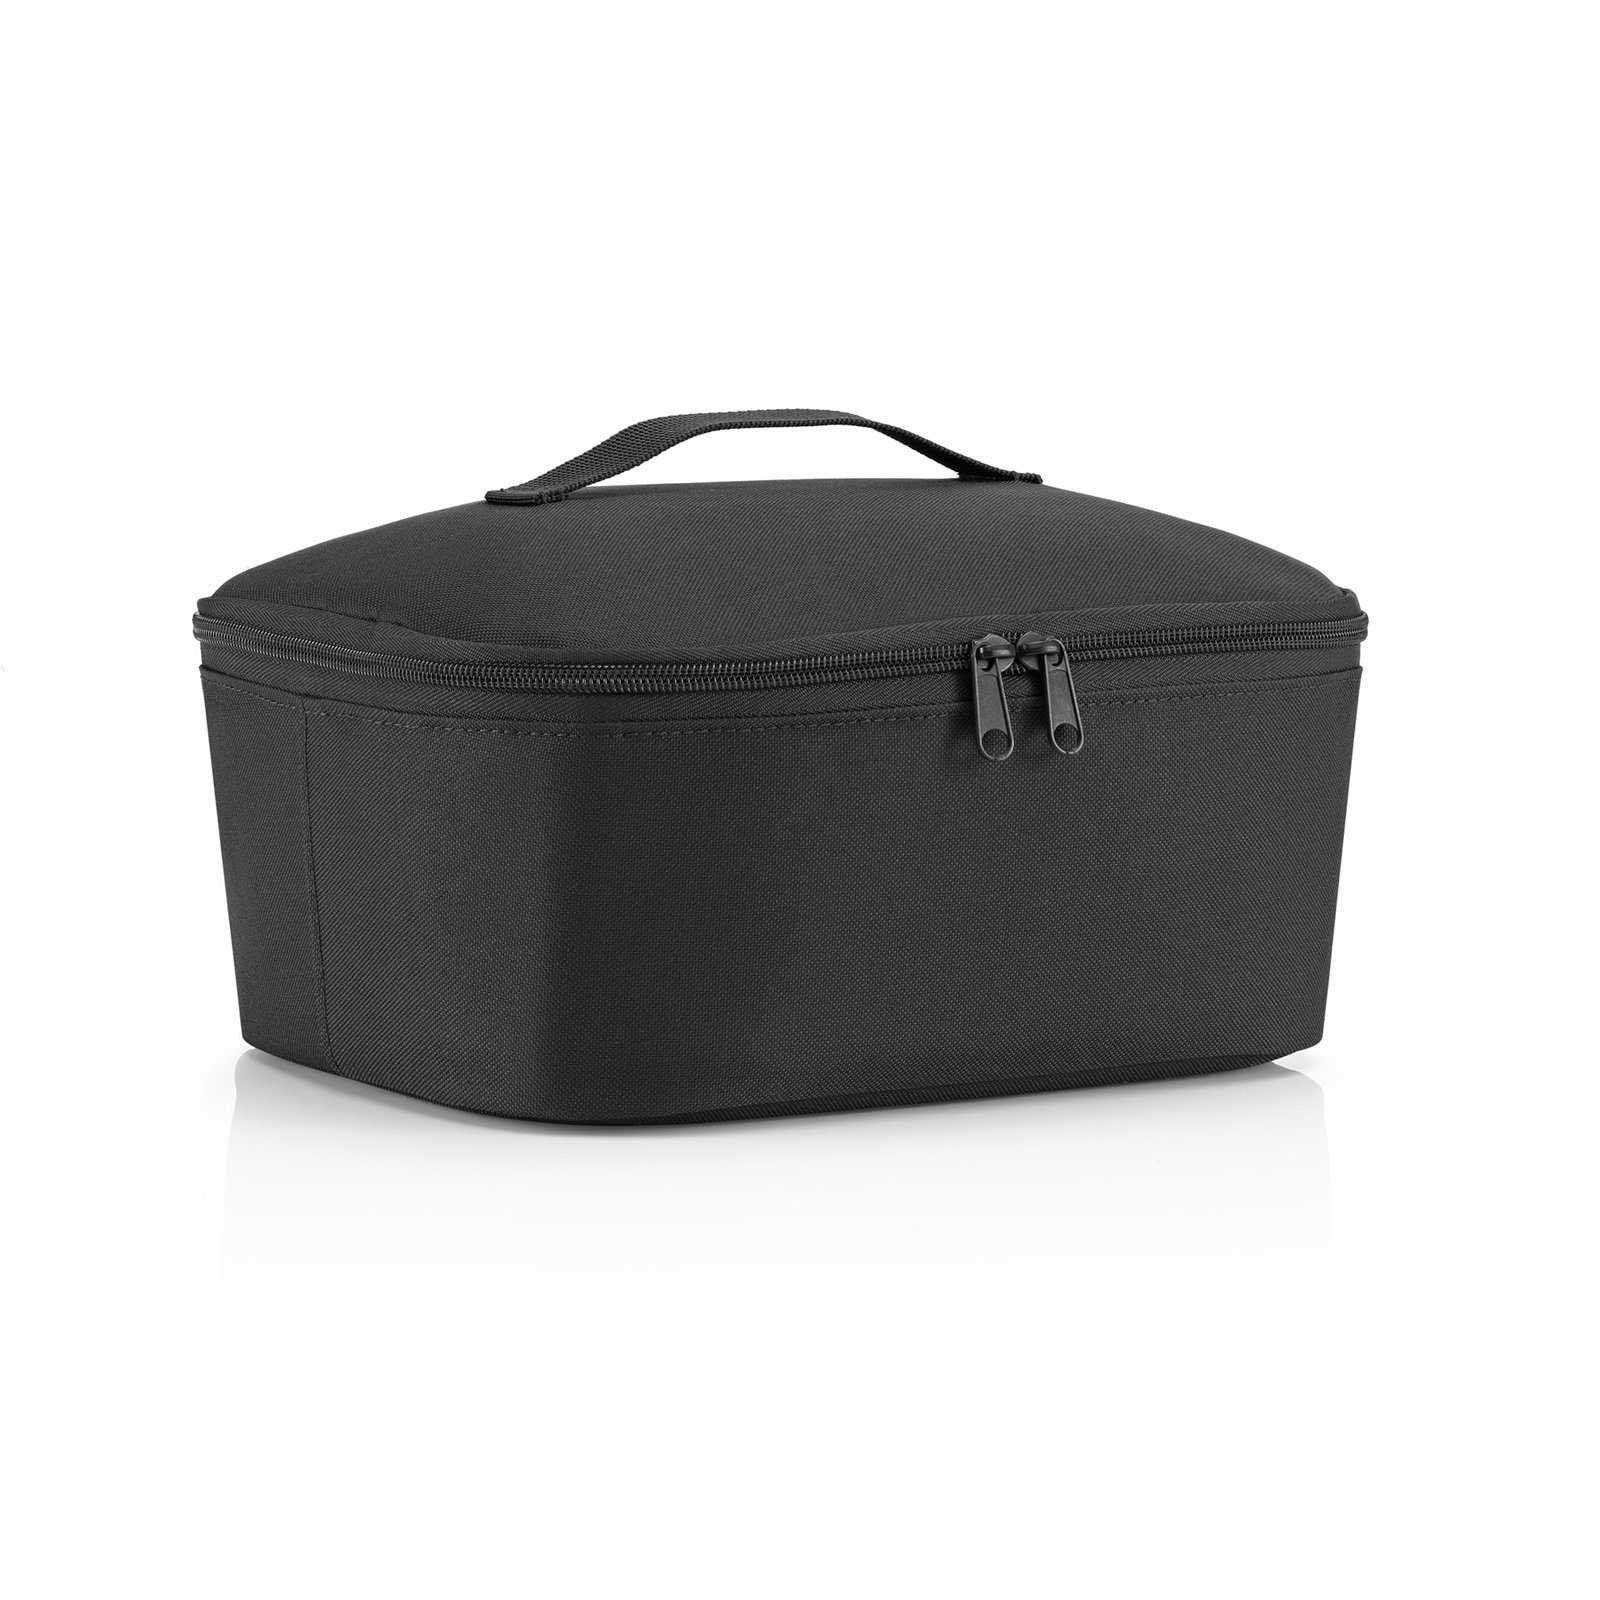 [Produkte vorbestellen] REISENTHEL® Einkaufsshopper Coolerbag M 4.5 Shopping, black l Pocket, Kühltasche